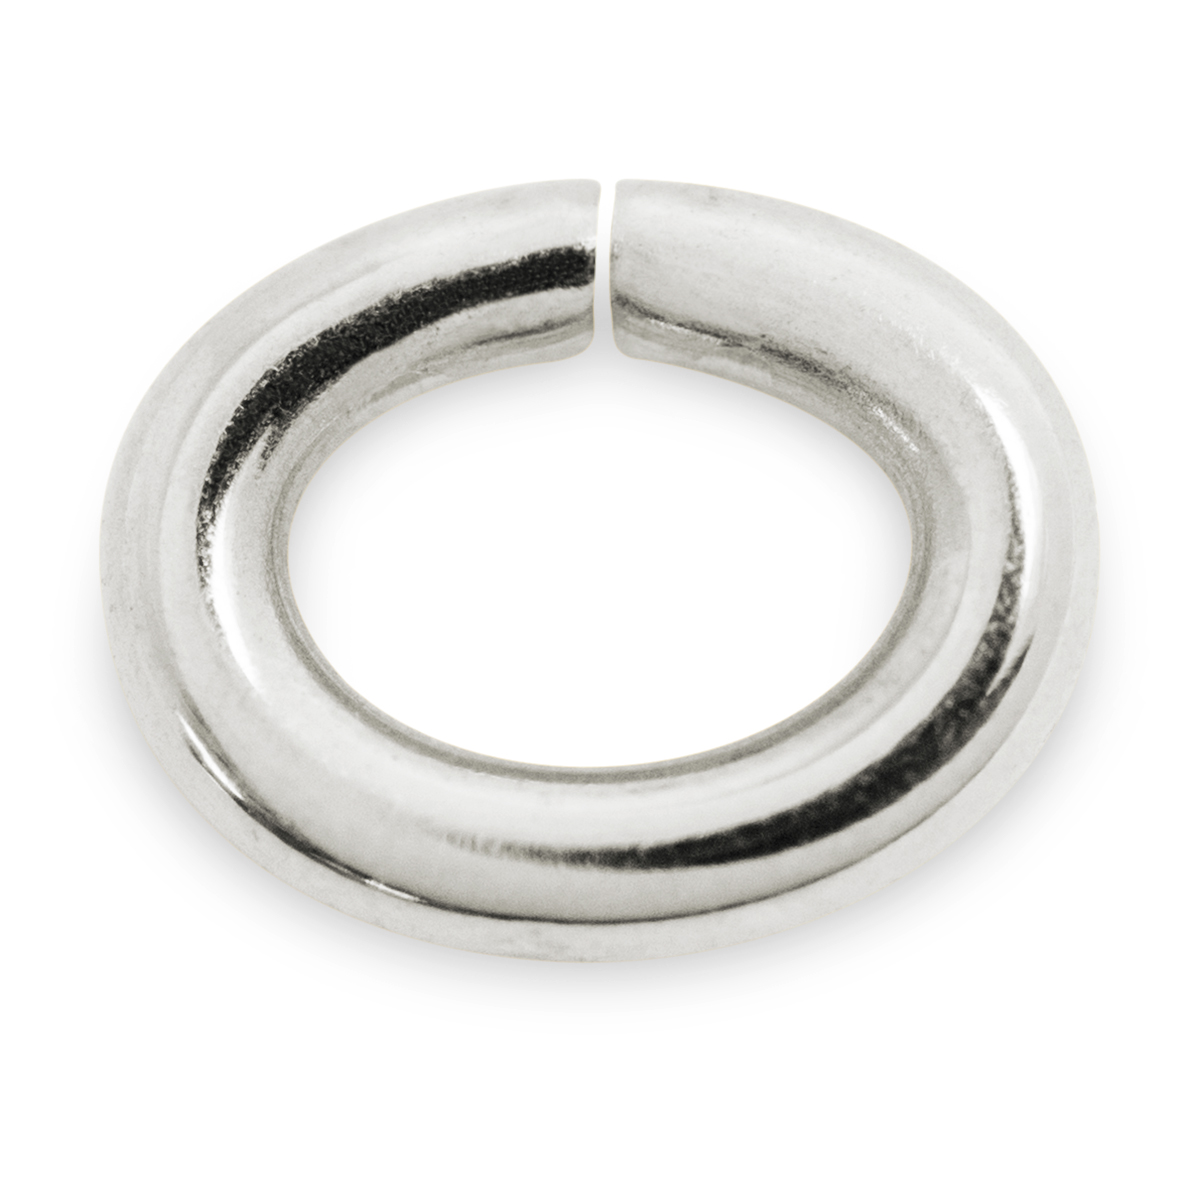 Binderinge, oval, 925/- Silber, Ø 5,5 mm, Stärke 0,9 mm